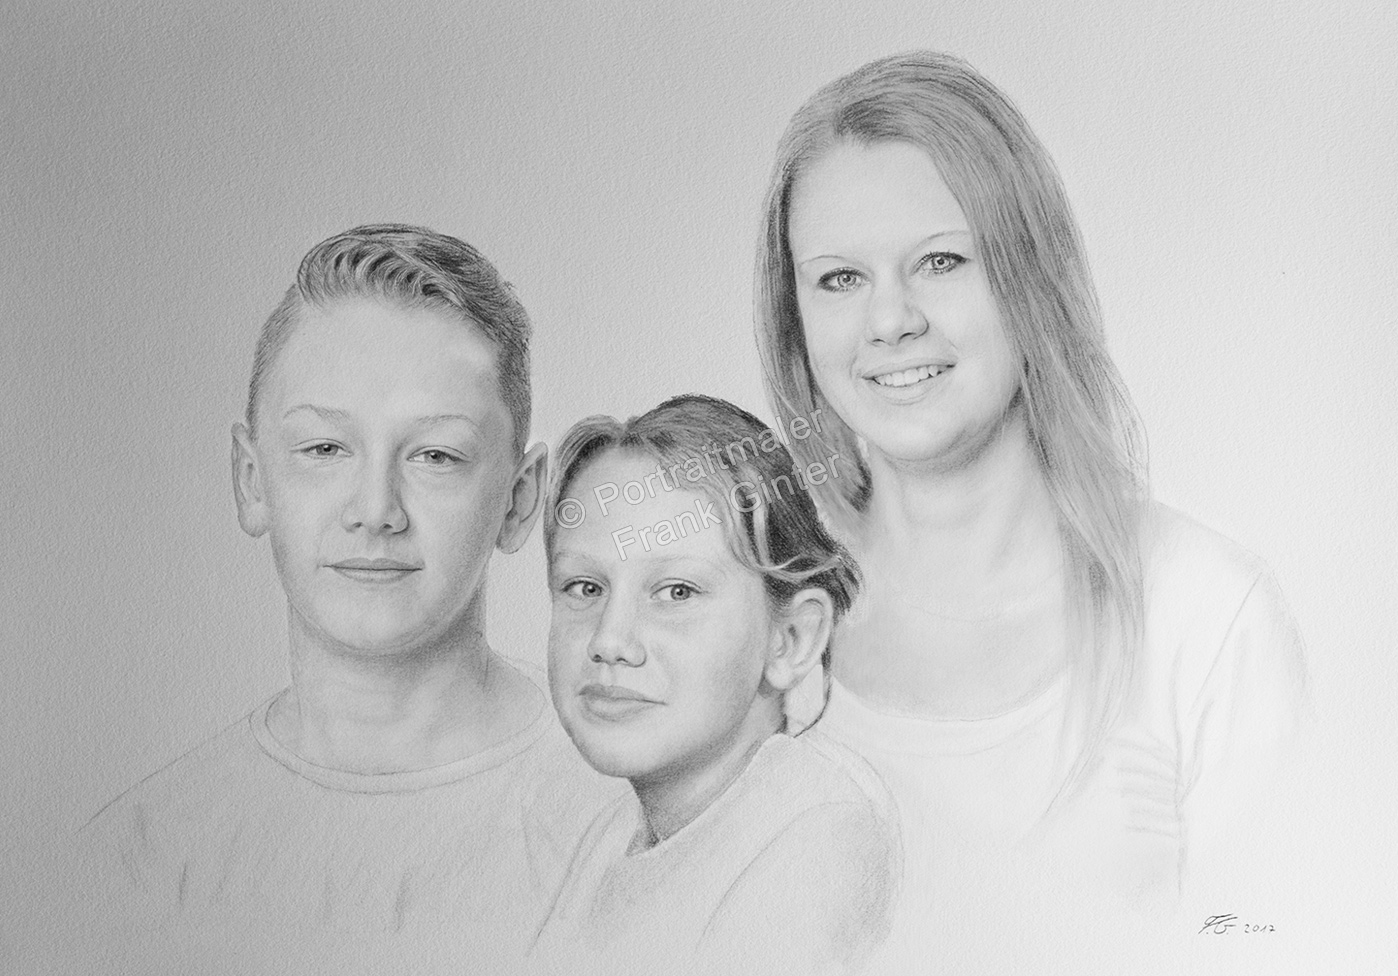 Bleistiftzeichnungen, Portraitzeichnungen, Geschwister-Familien-Portraits zeichnen lassen